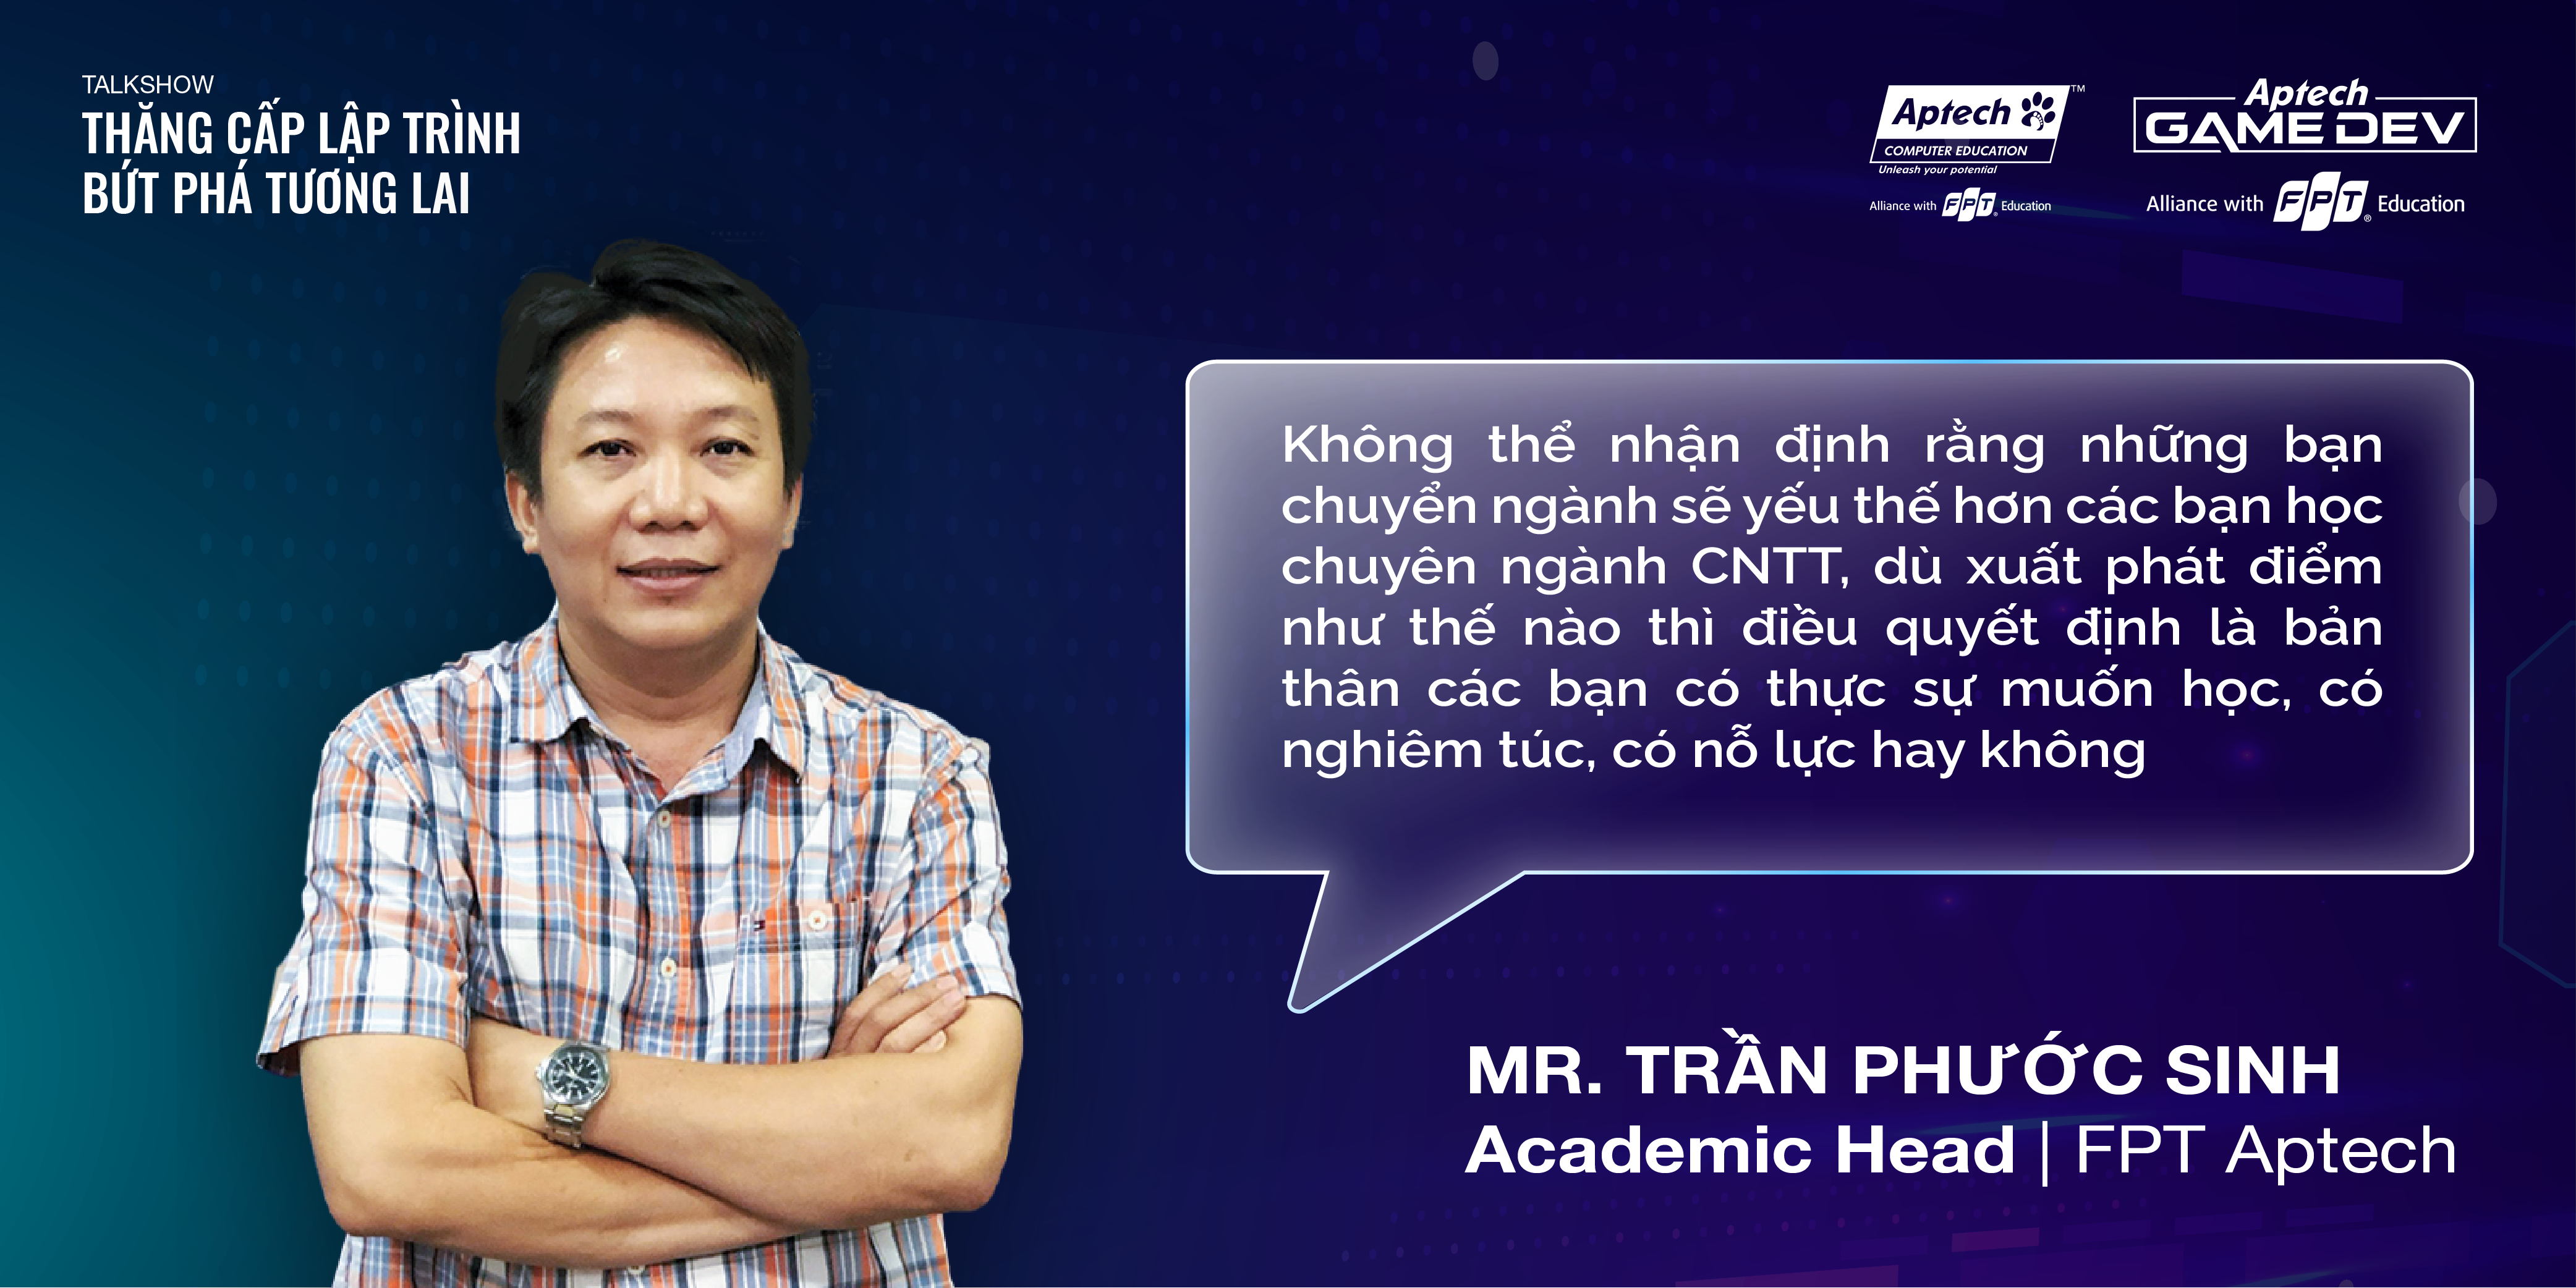 Thầy Trần Phước Sinh - Giám đốc đào tạo FPT Aptech cho biết dù ở bất cứ ngành học hay cấp học nào, năng lực mới là yếu tố quyết định vị thế của mình